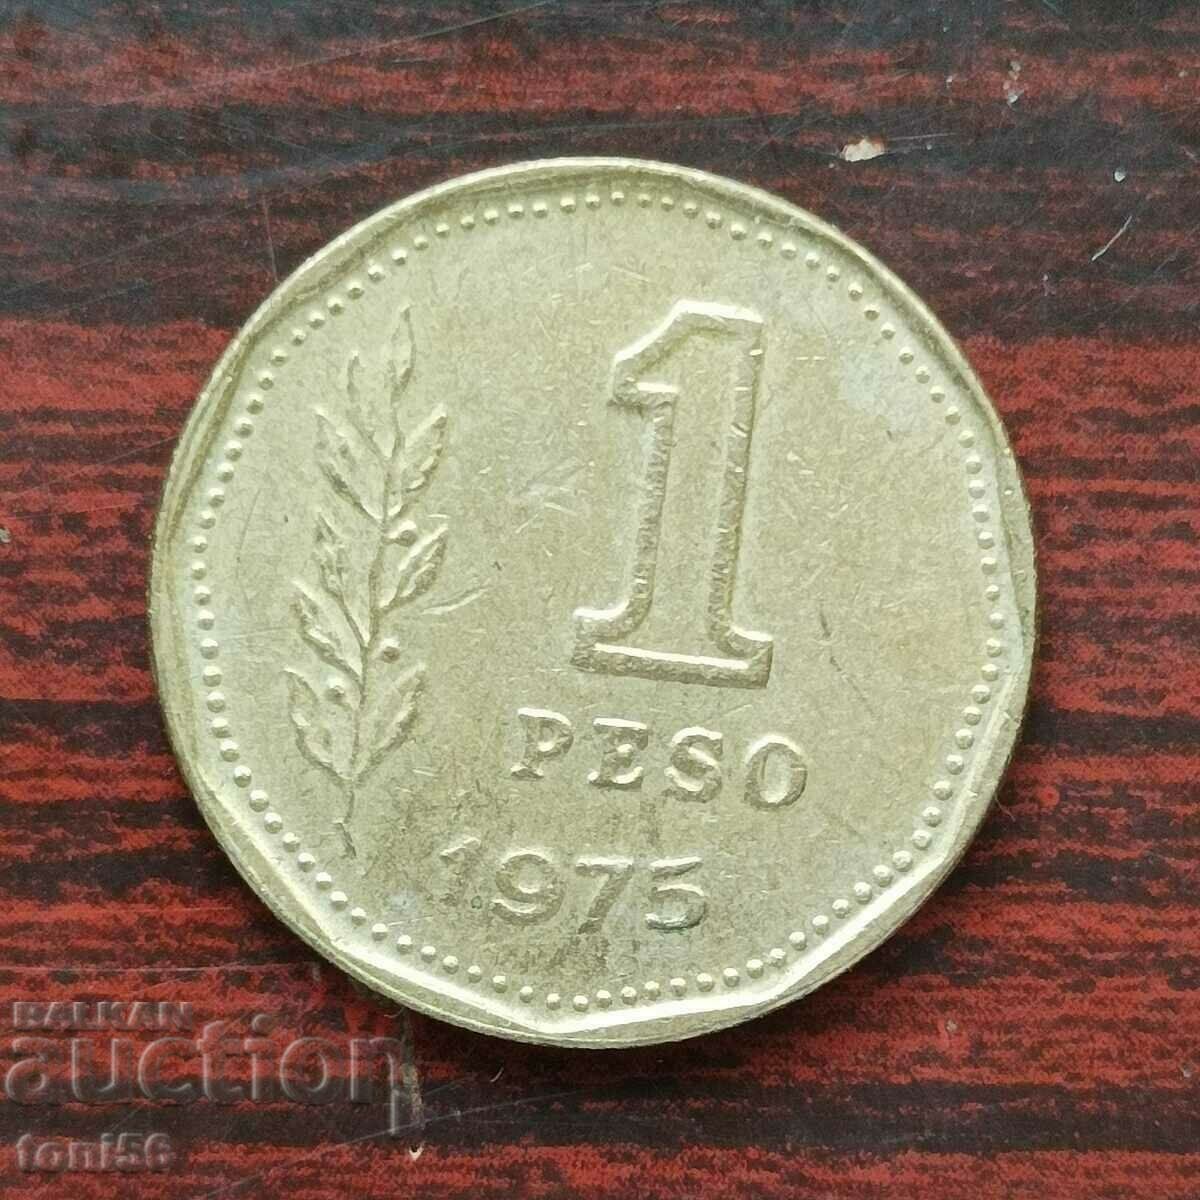 Argentina 1 peso 1975 aUNC